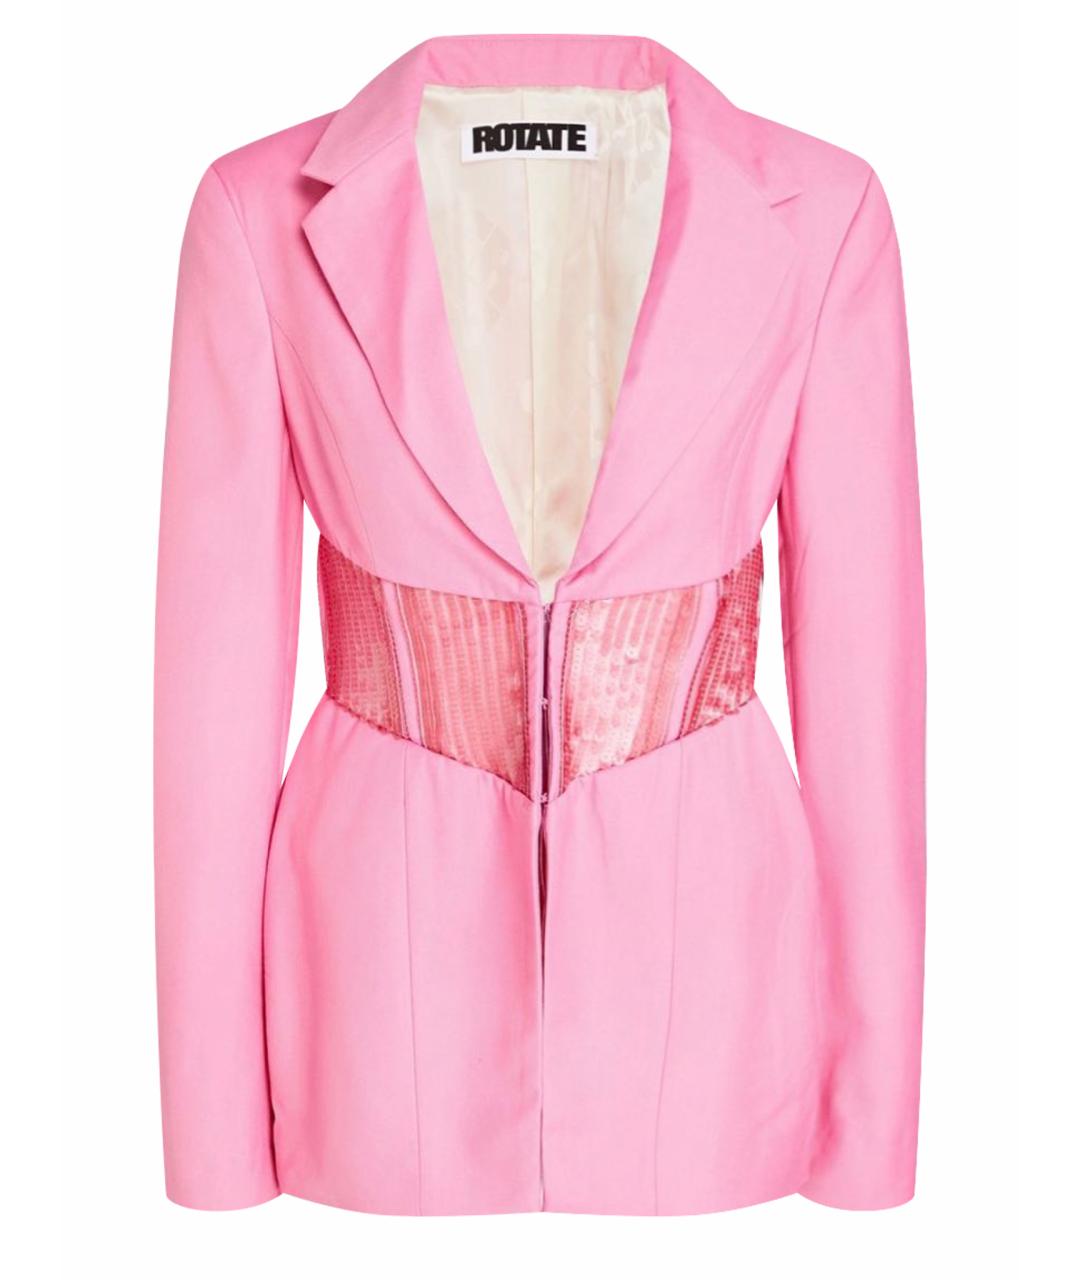 ROTATE Розовый жакет/пиджак, фото 1